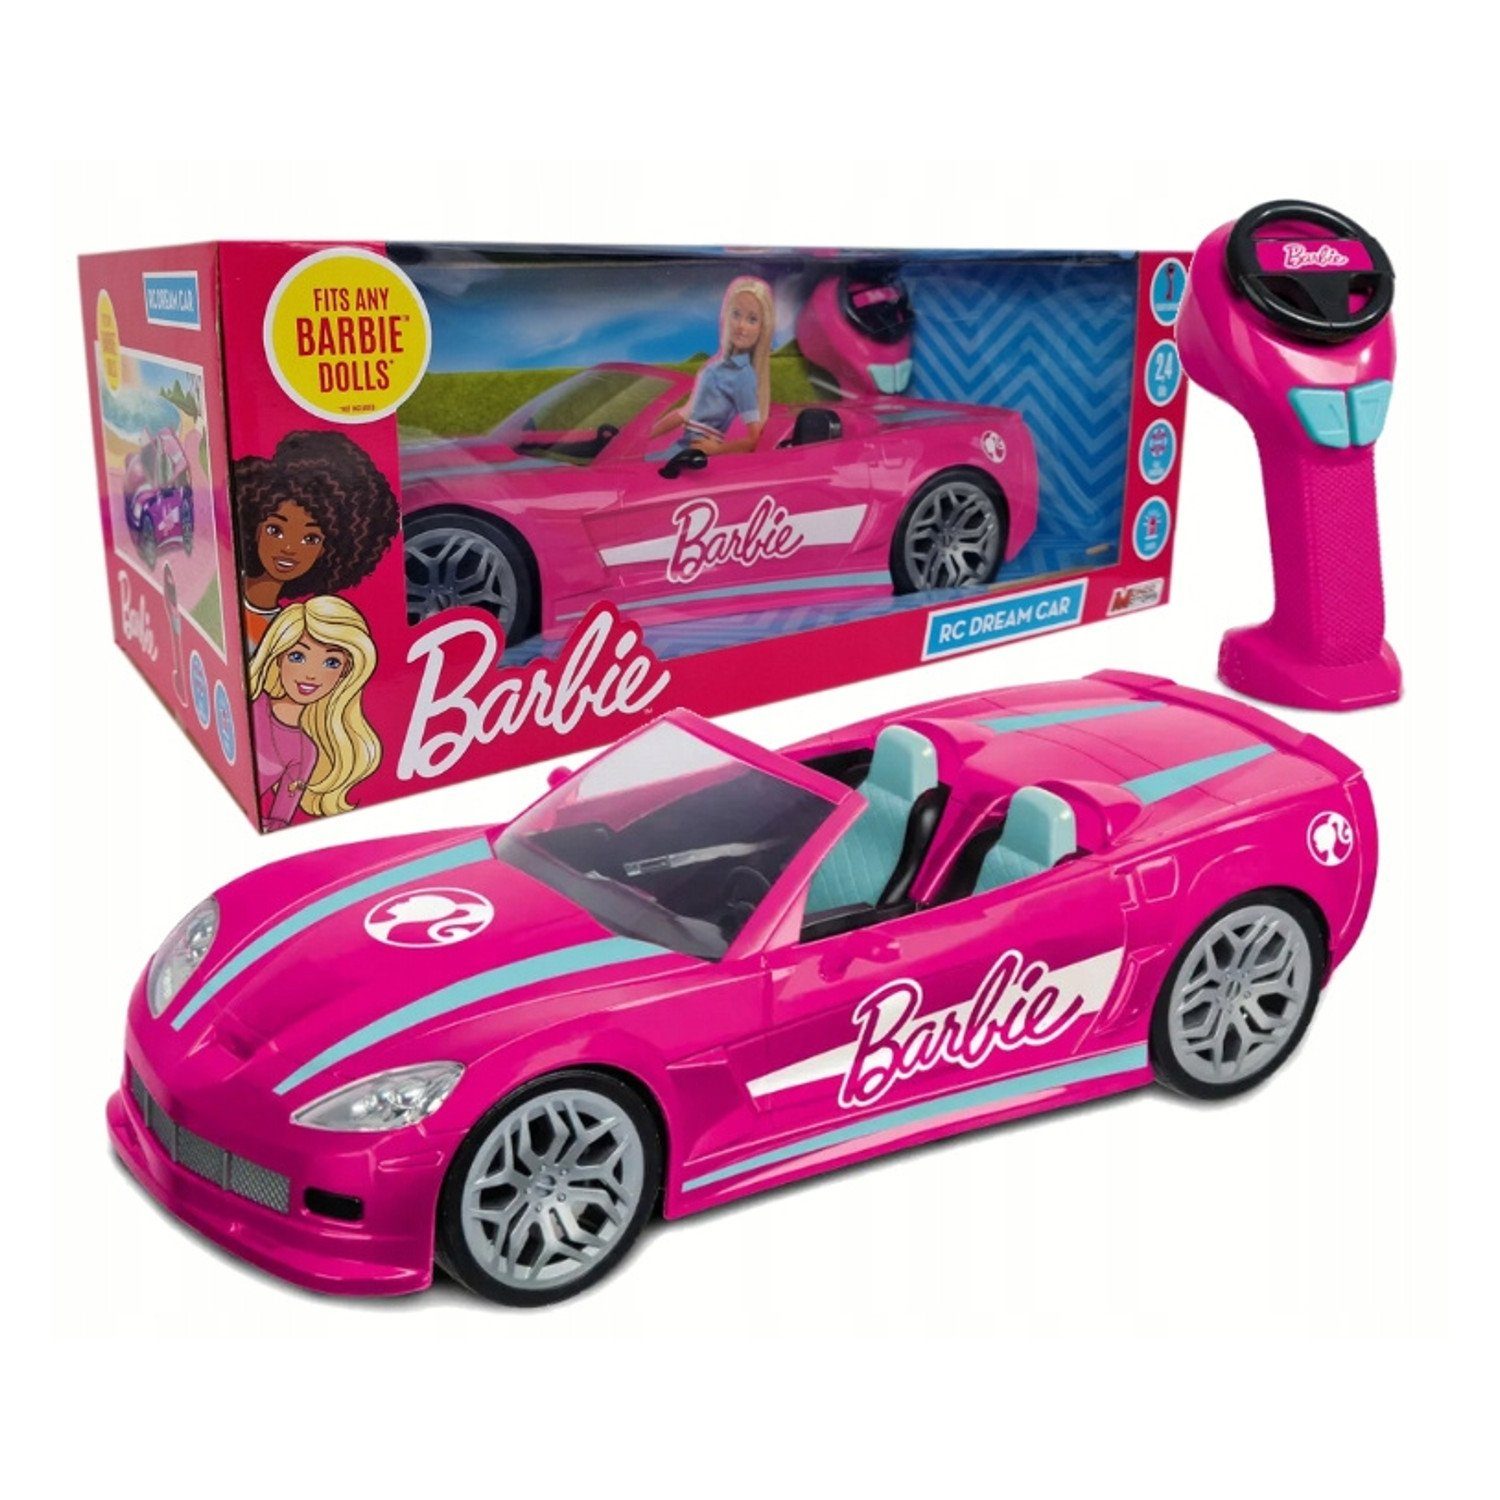 Cabrio Sport Car, TOP Auto mit Kontrolle, Spielzeug mit